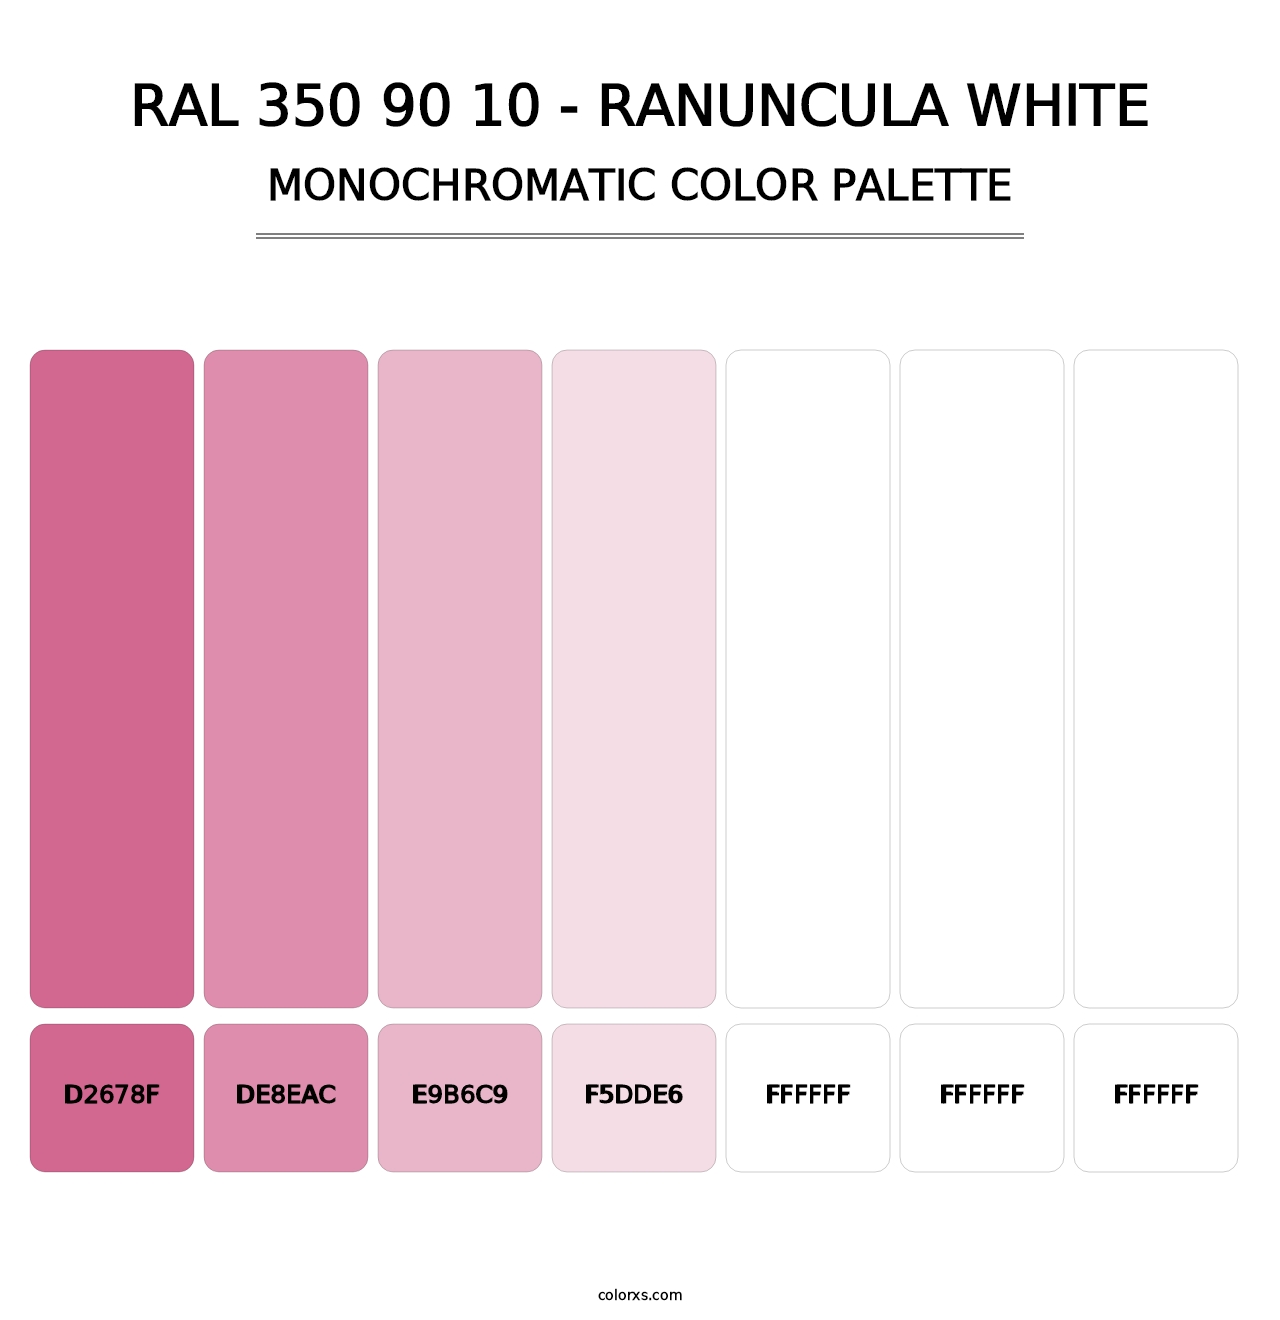 RAL 350 90 10 - Ranuncula White - Monochromatic Color Palette